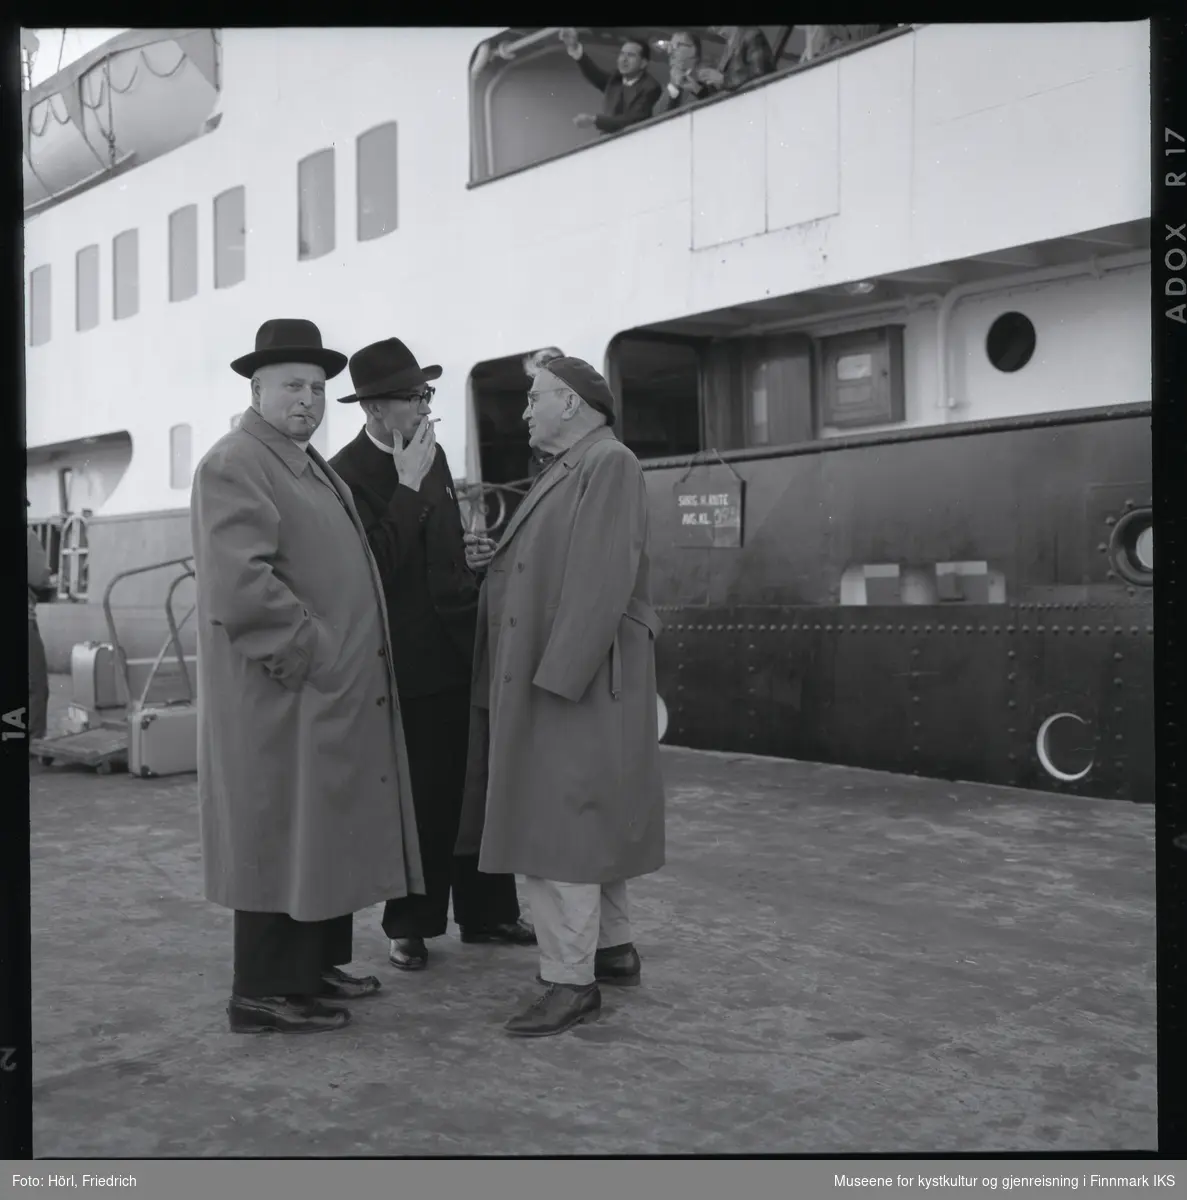 På kai i Harstad står tre menn og tar seg en røyk. I midten står Pater Spitz. En av de andre menn er Pater Rusche. I bakgrunnen ligger en skip til kais. Kofferter står ved landgangen og øverst i bildet ser man folk om bord på skipet der en av dem peker på noe.